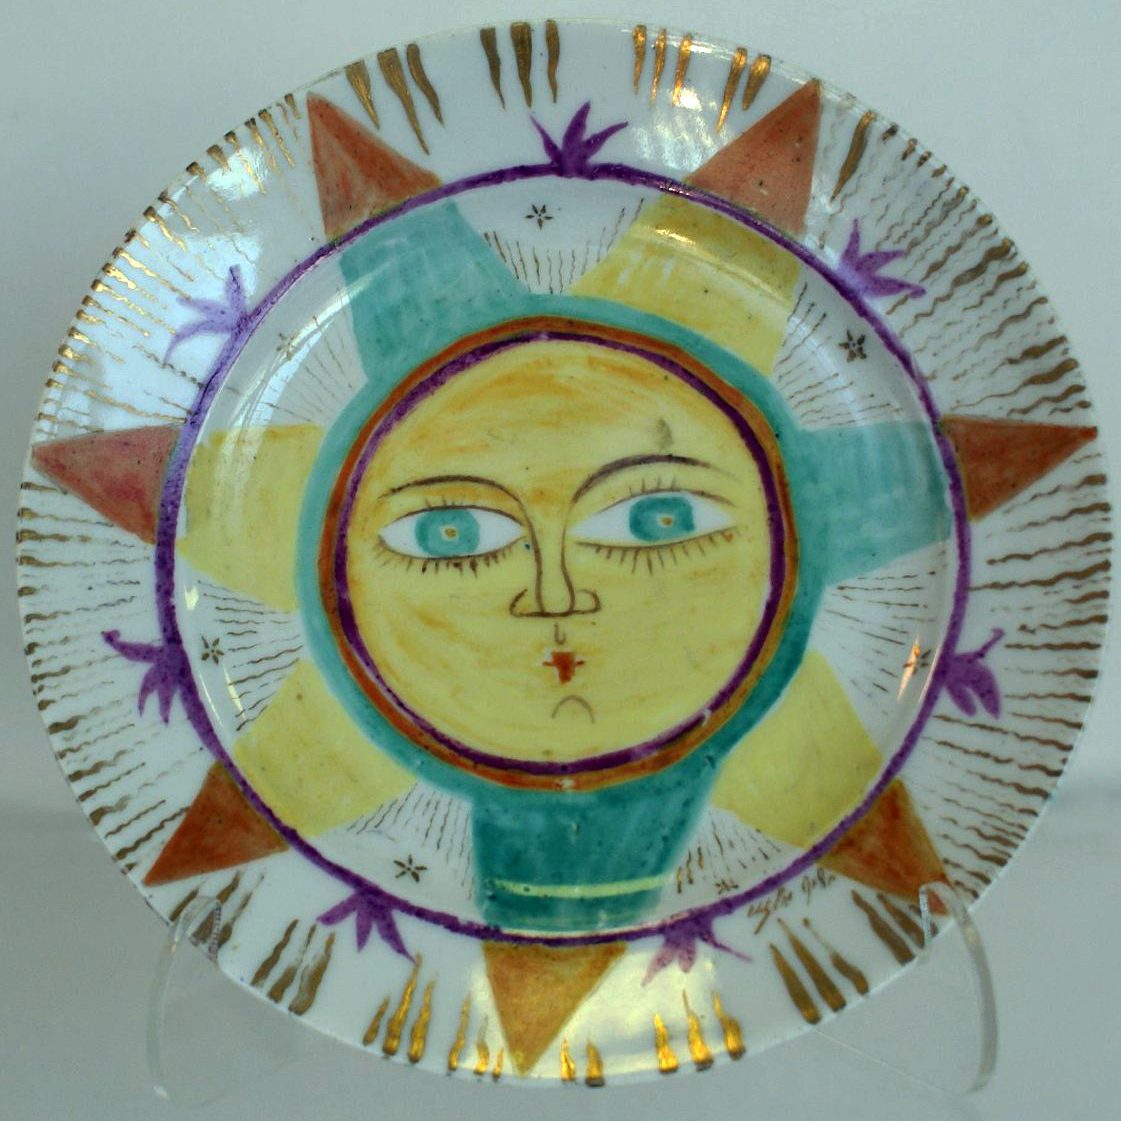 Small Soviet porcelain plate "The Sun" by Shchekotikhina-Pototskaya. State Porcelain Factory